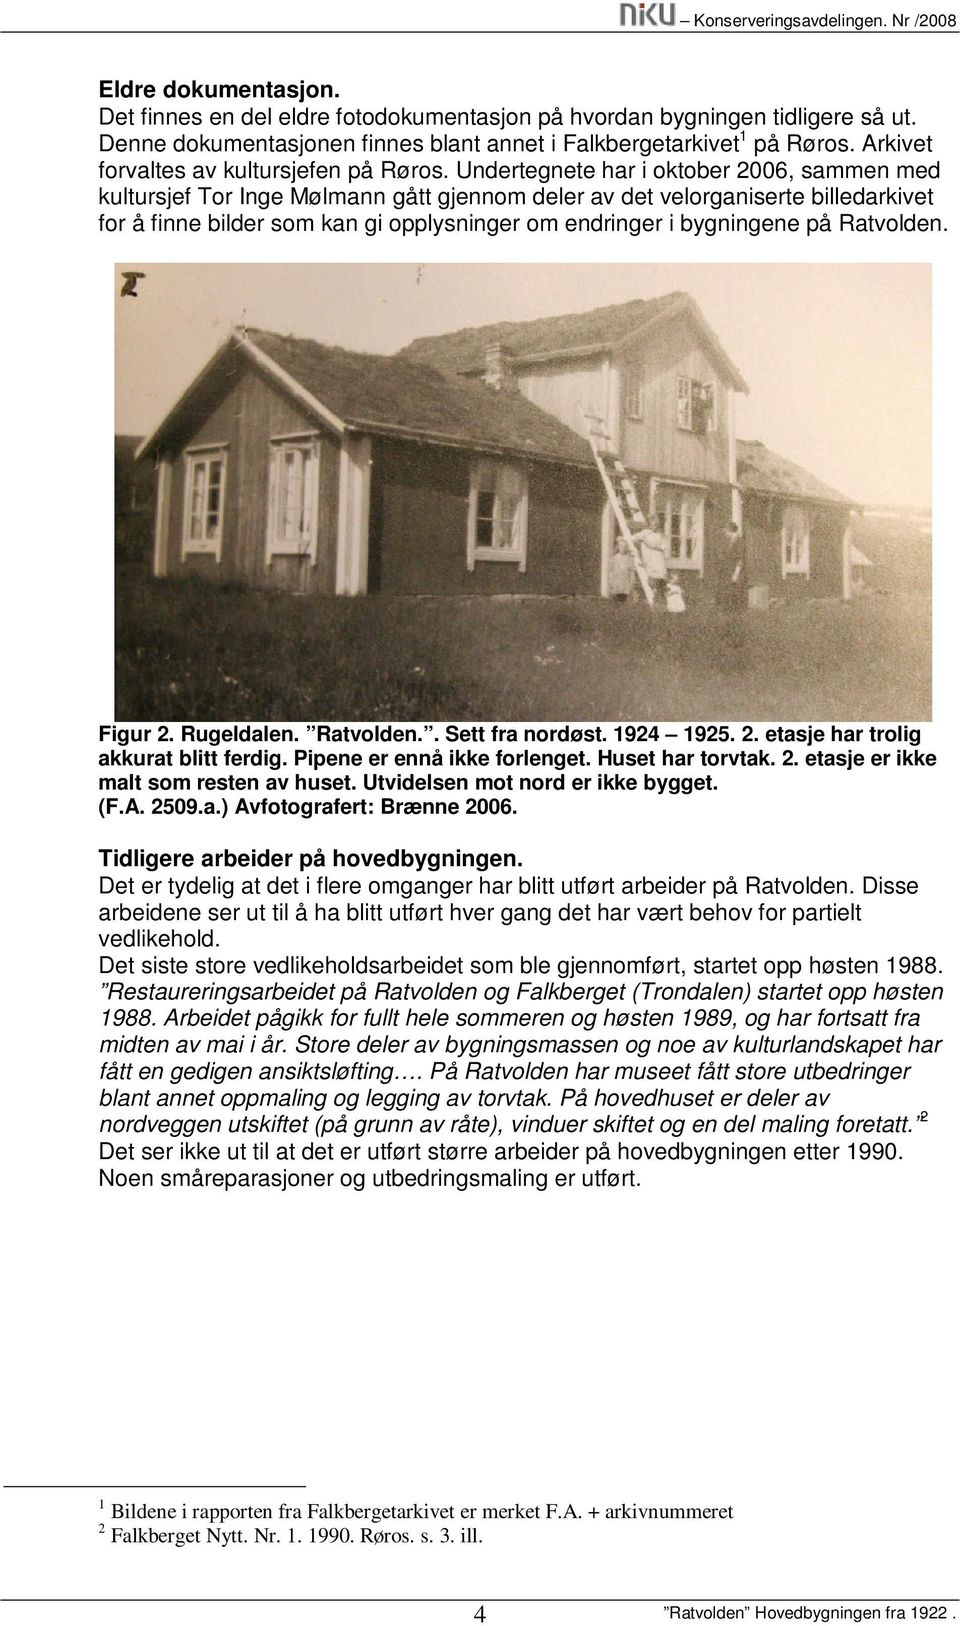 Undertegnete har i oktober 2006, sammen med kultursjef Tor Inge Mølmann gått gjennom deler av det velorganiserte billedarkivet for å finne bilder som kan gi opplysninger om endringer i bygningene på